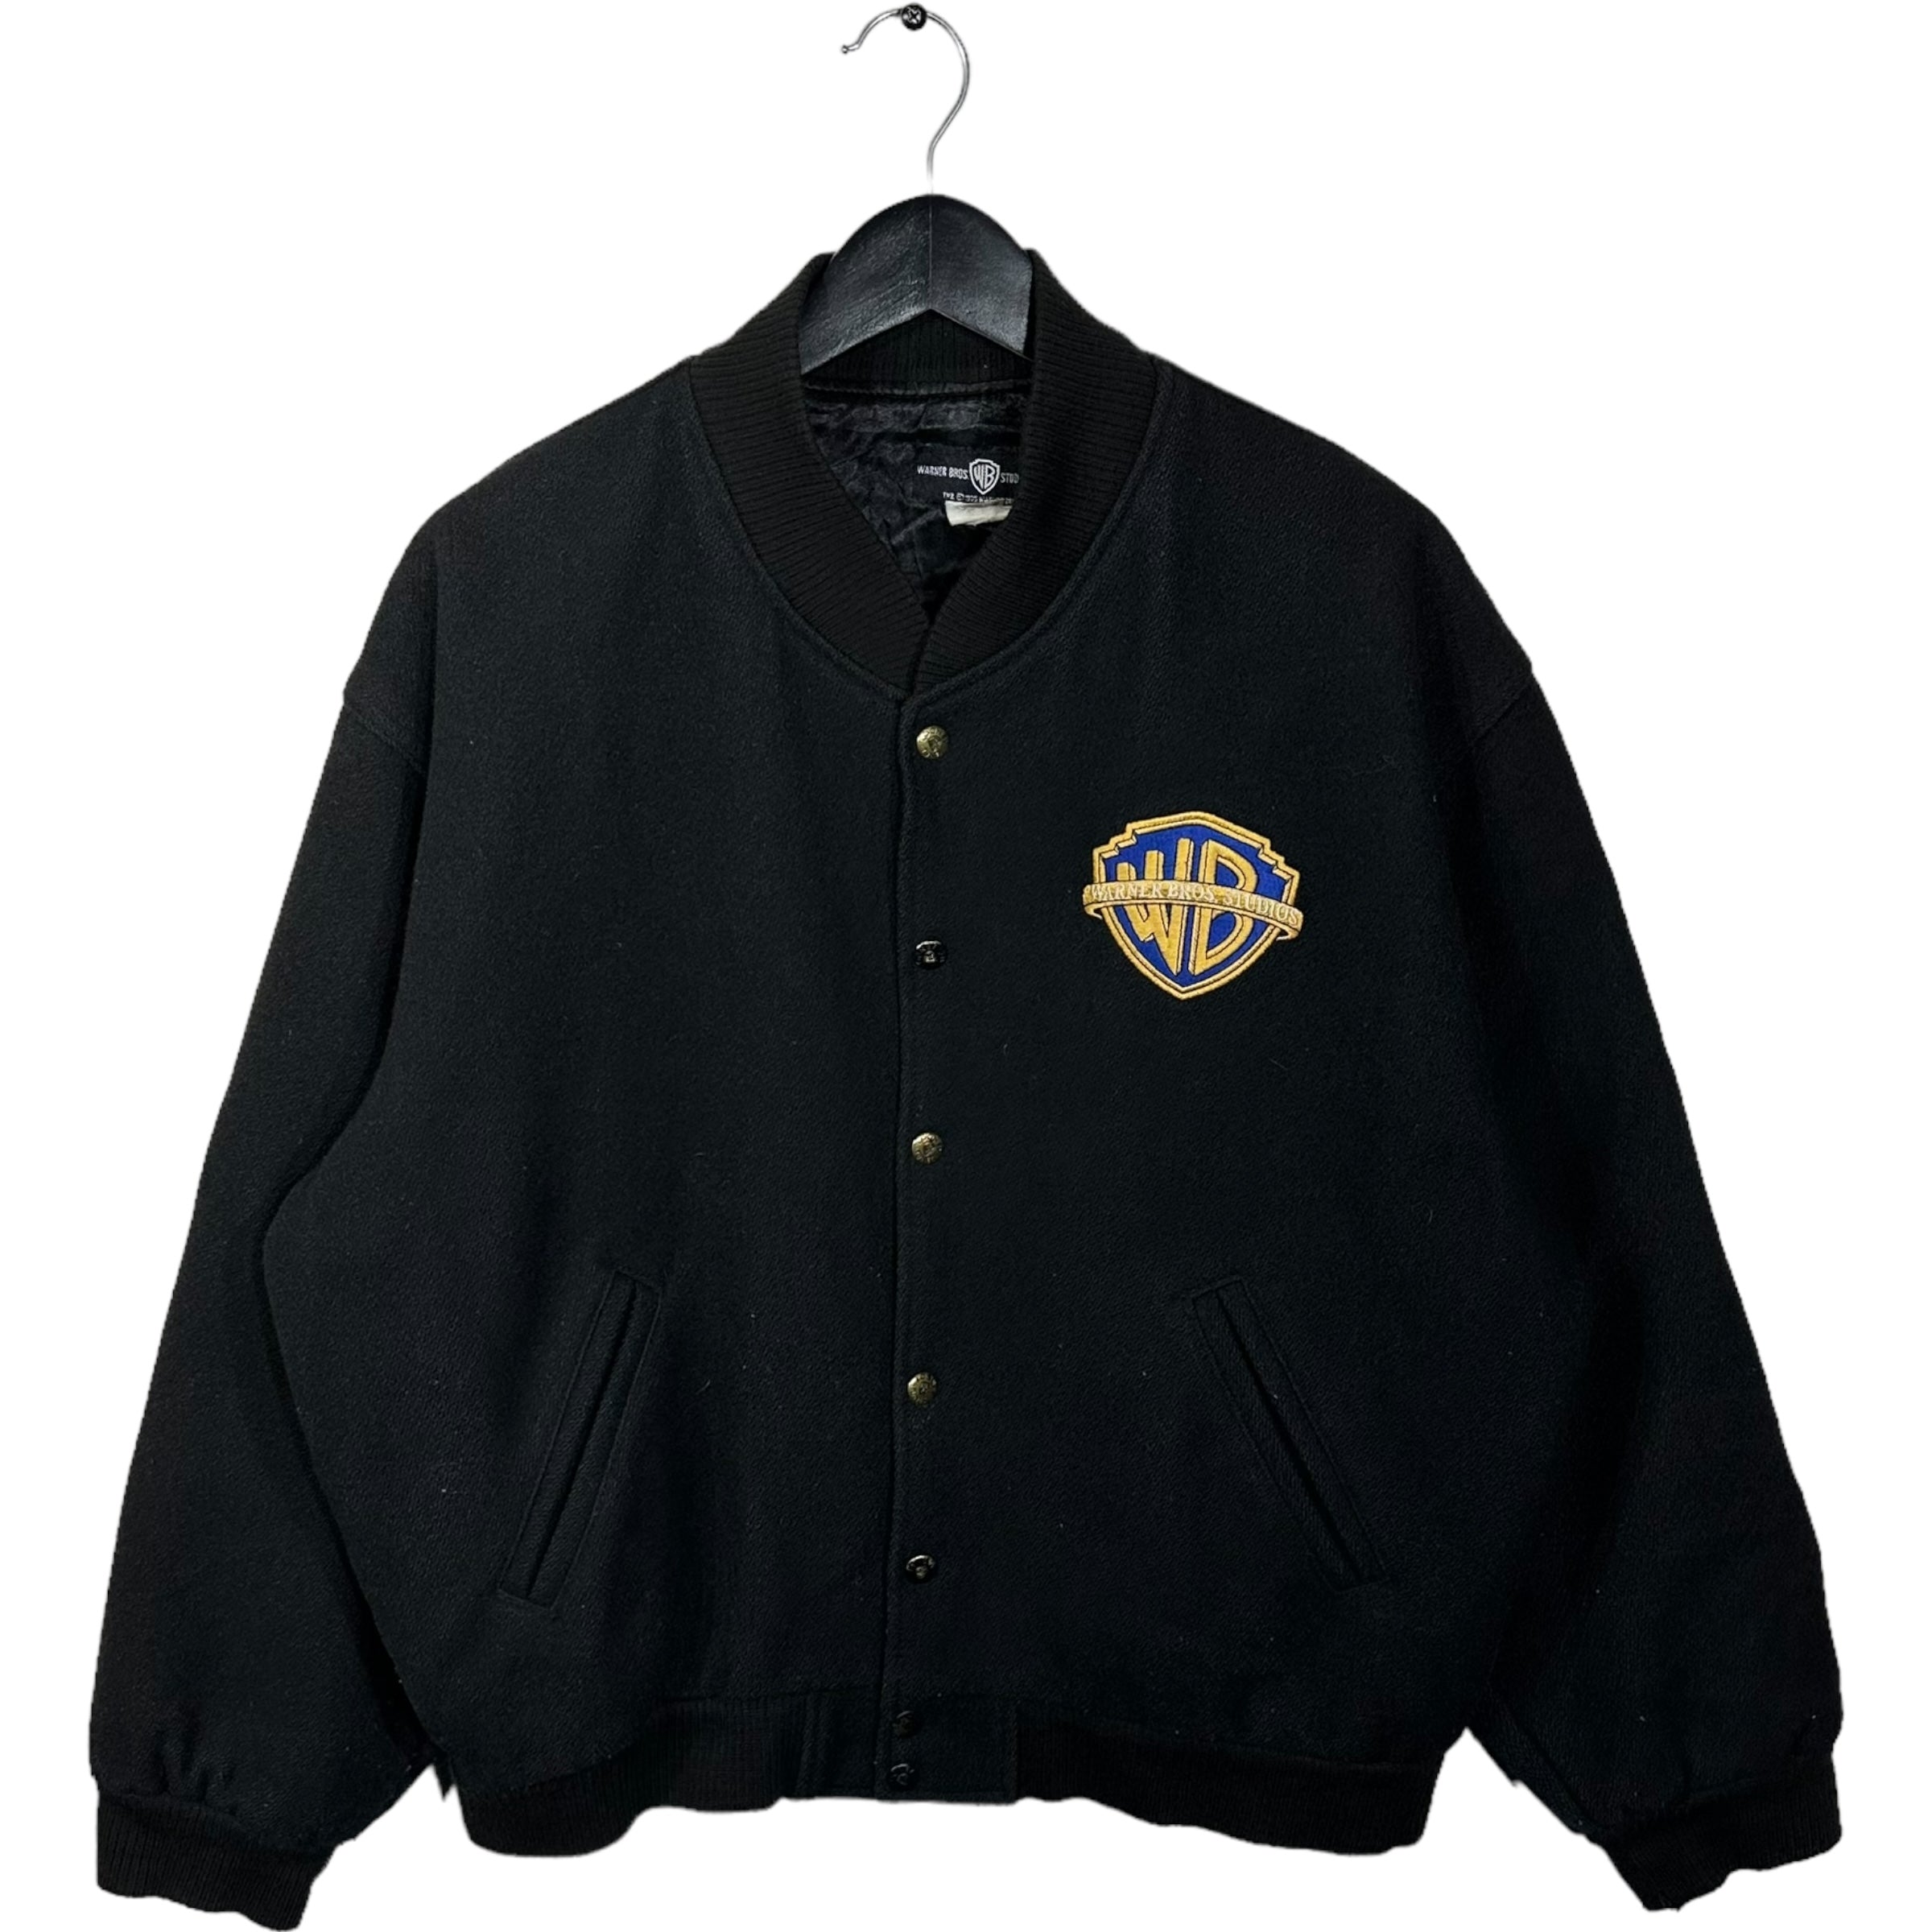 Vintage Warner Bros Studio Varsity Jacket 1995